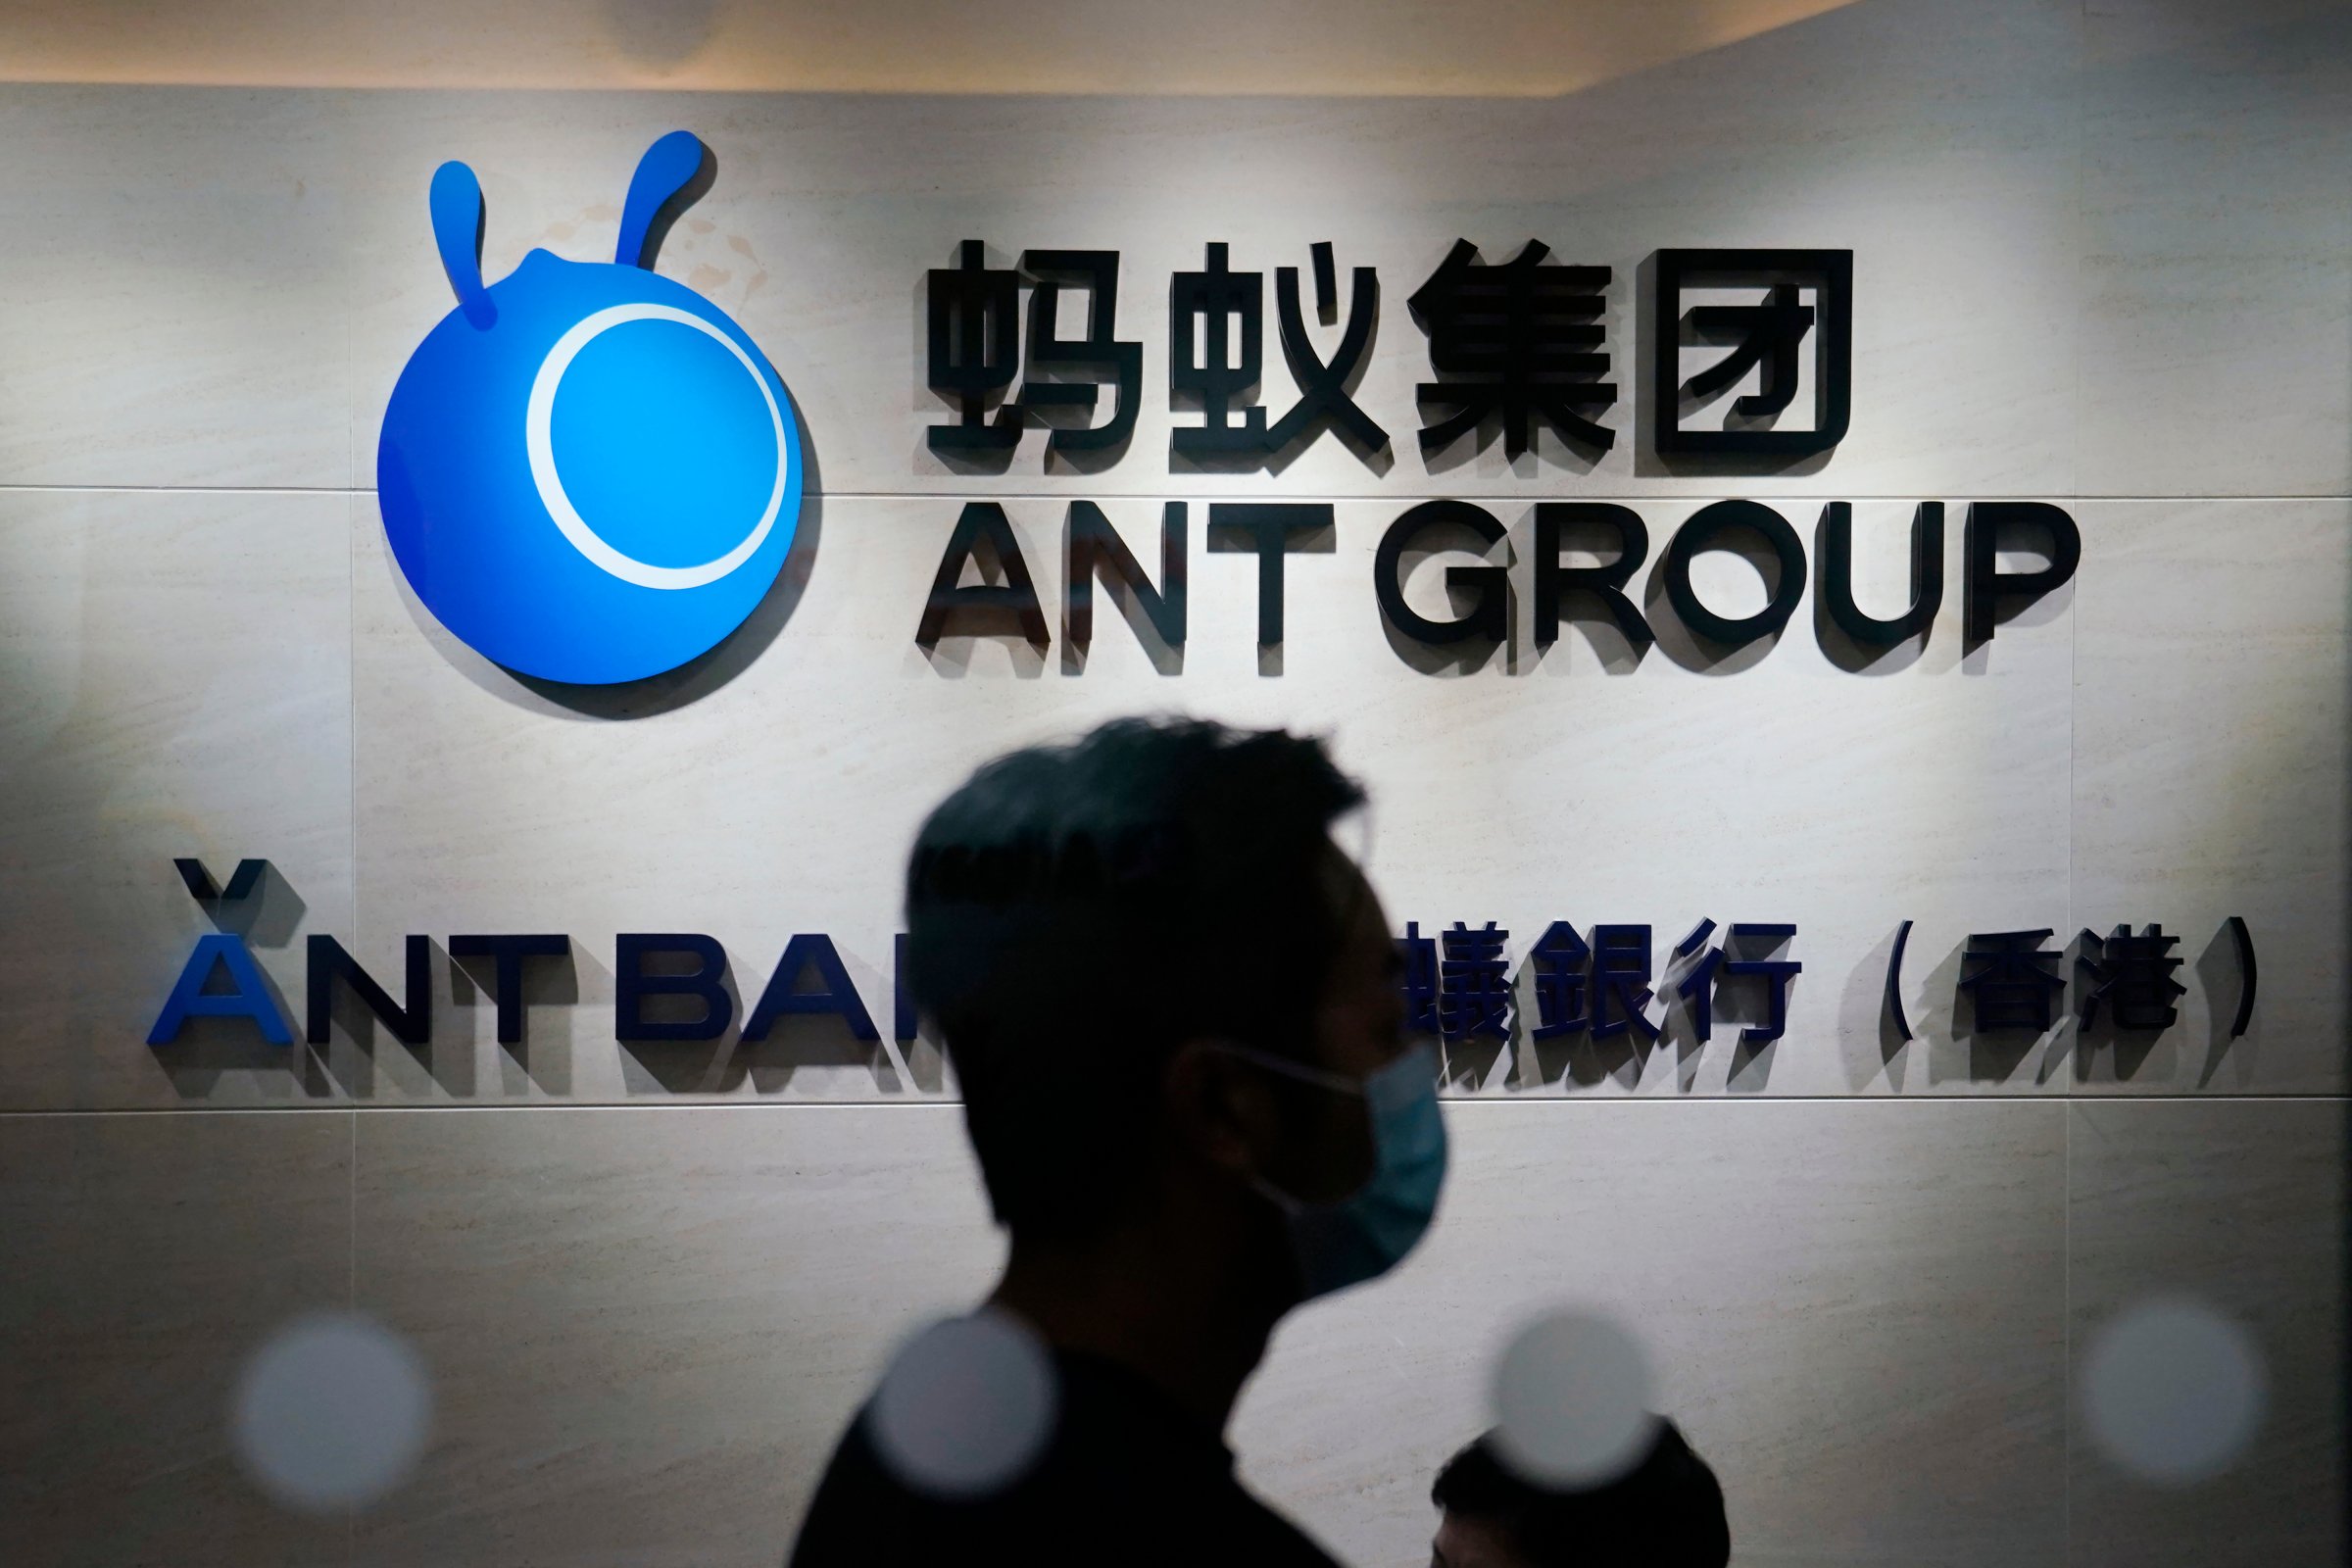 Hong Kong China Ant Group IPO